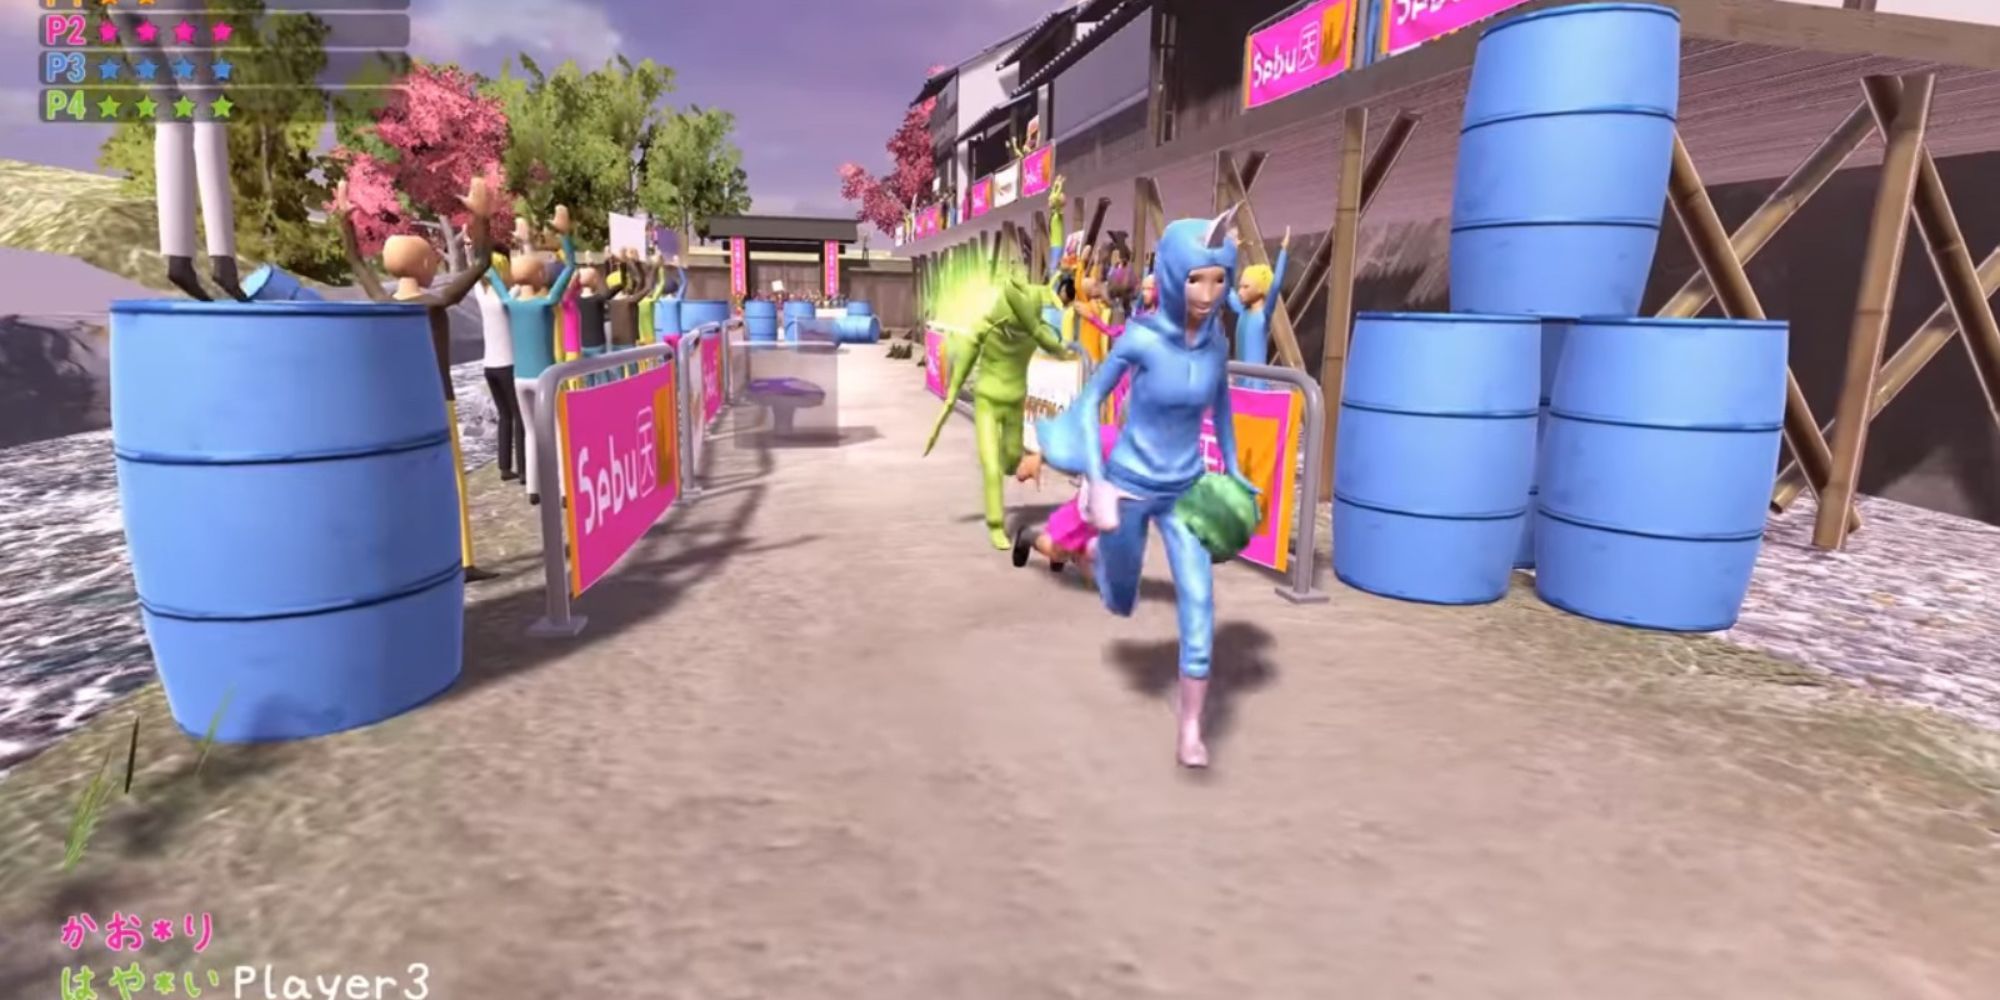 Трое игроков участвуют в Nippon Marathon, бегут по улицам в окружении публики и синих бочек.